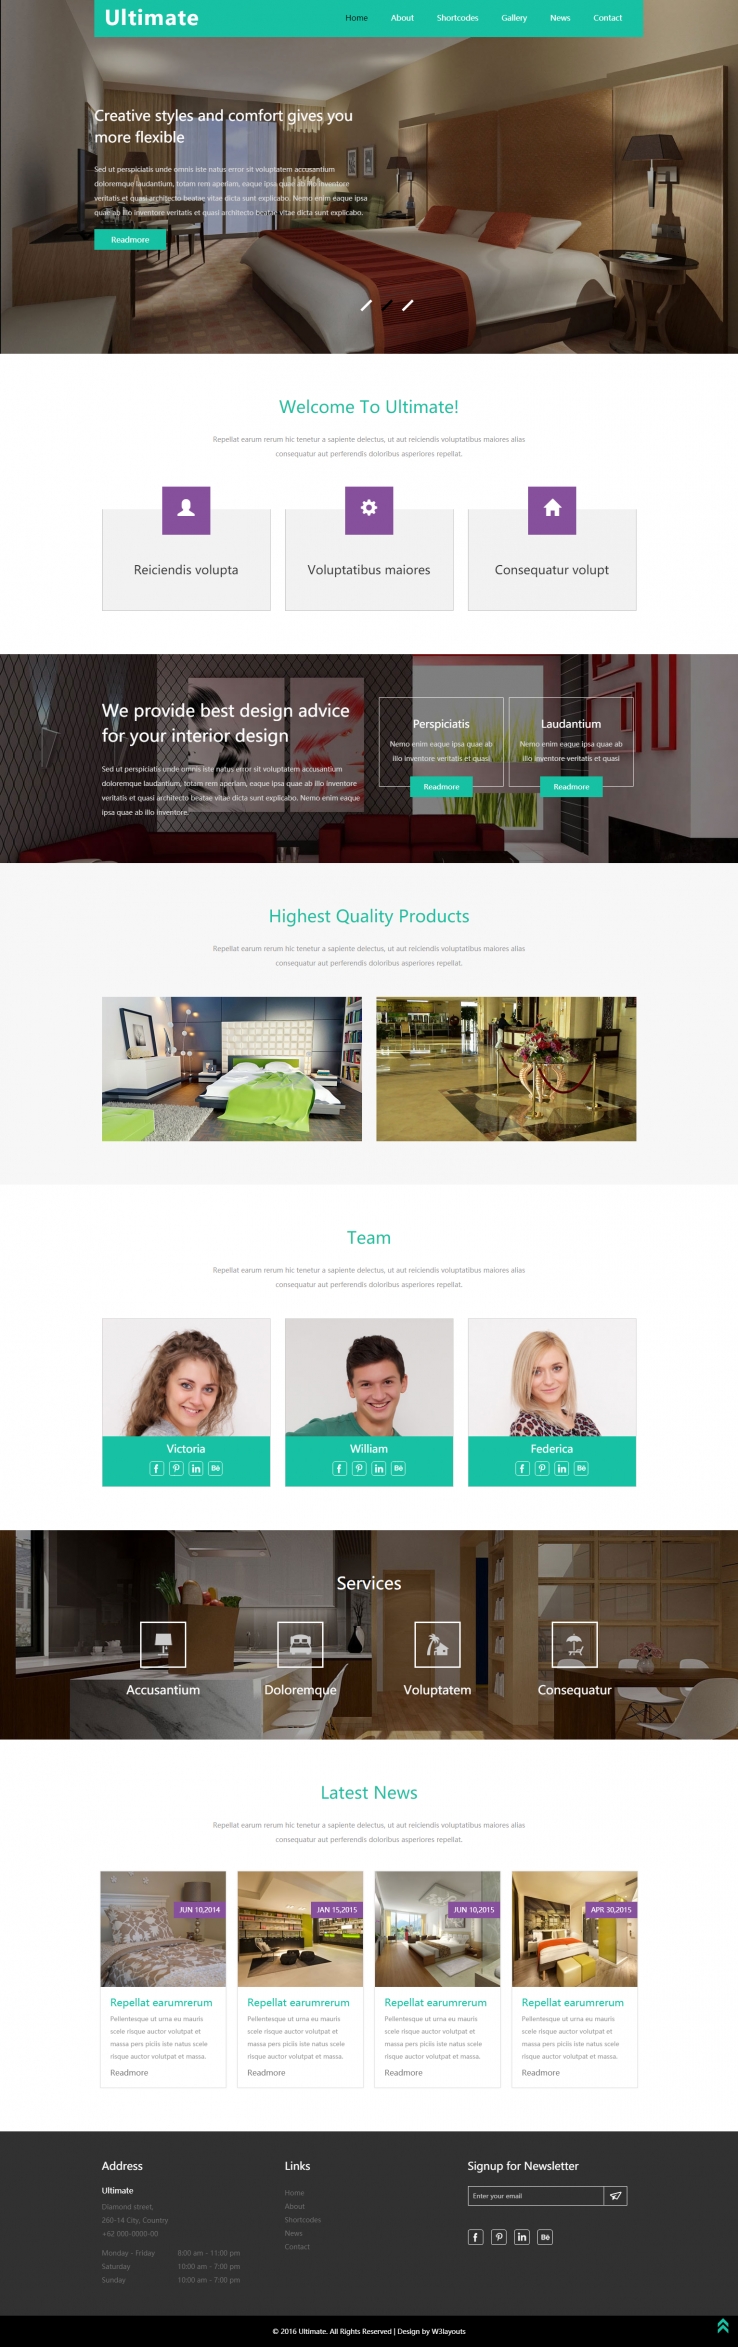 绿色简洁风格的梦想家居设计整站网站源码下载